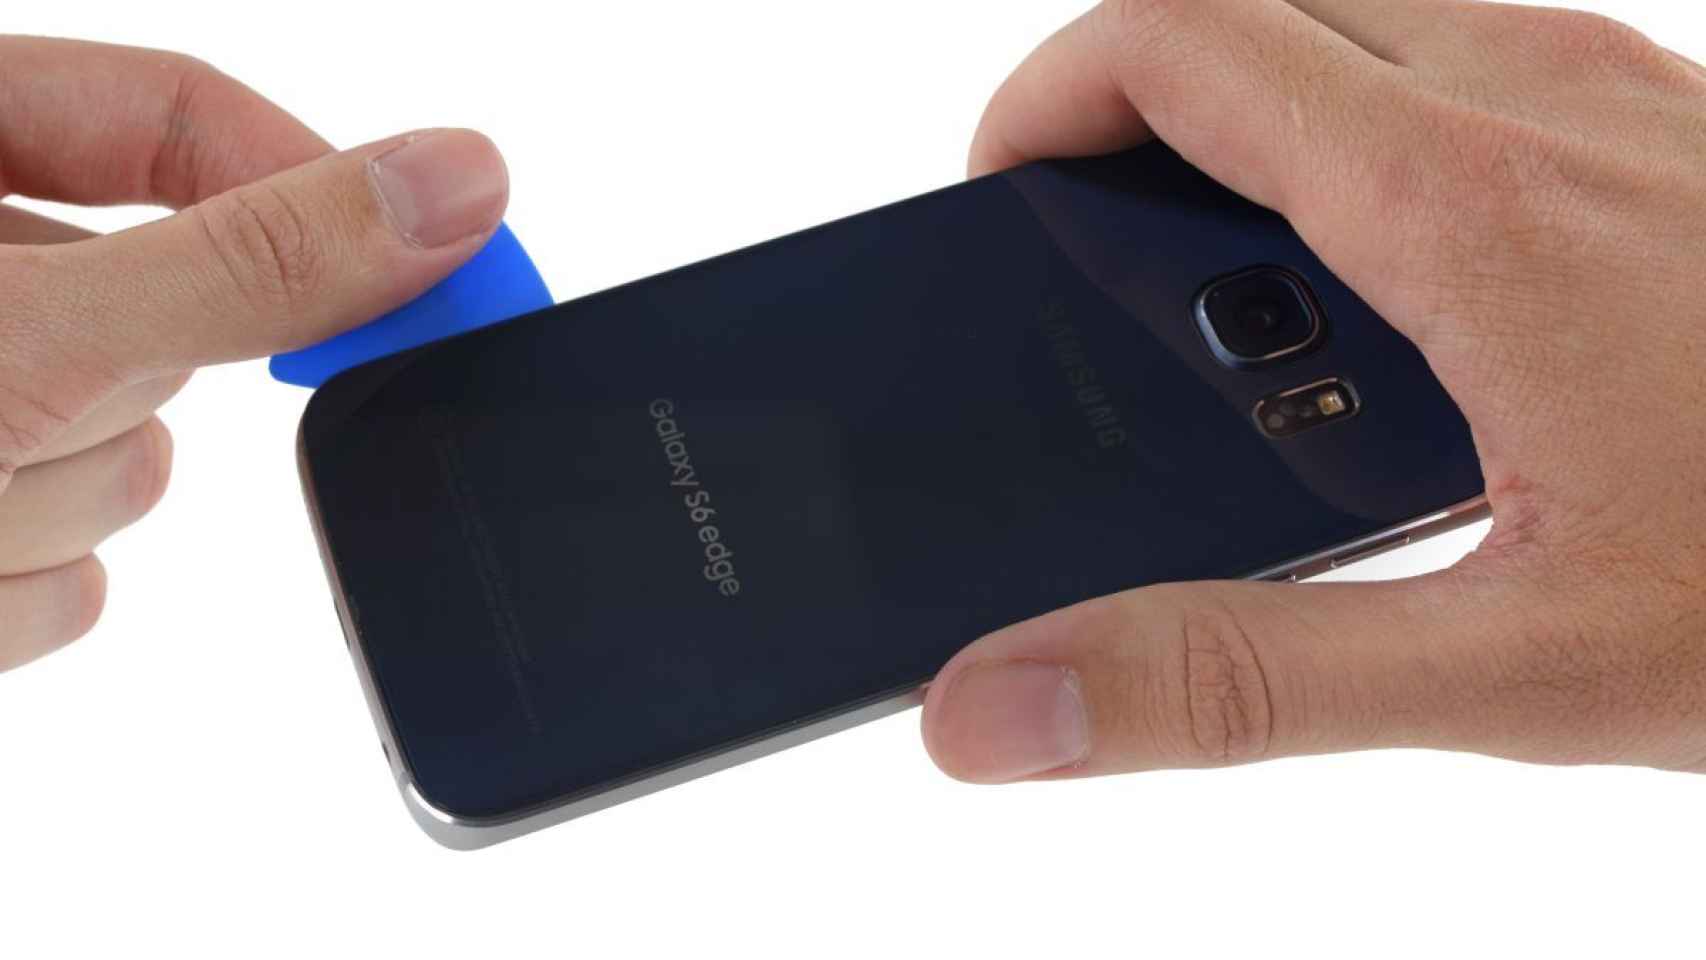 Samsung Galaxy S6 Edge y HTC One M9, casi imposibles de reparar según iFixit